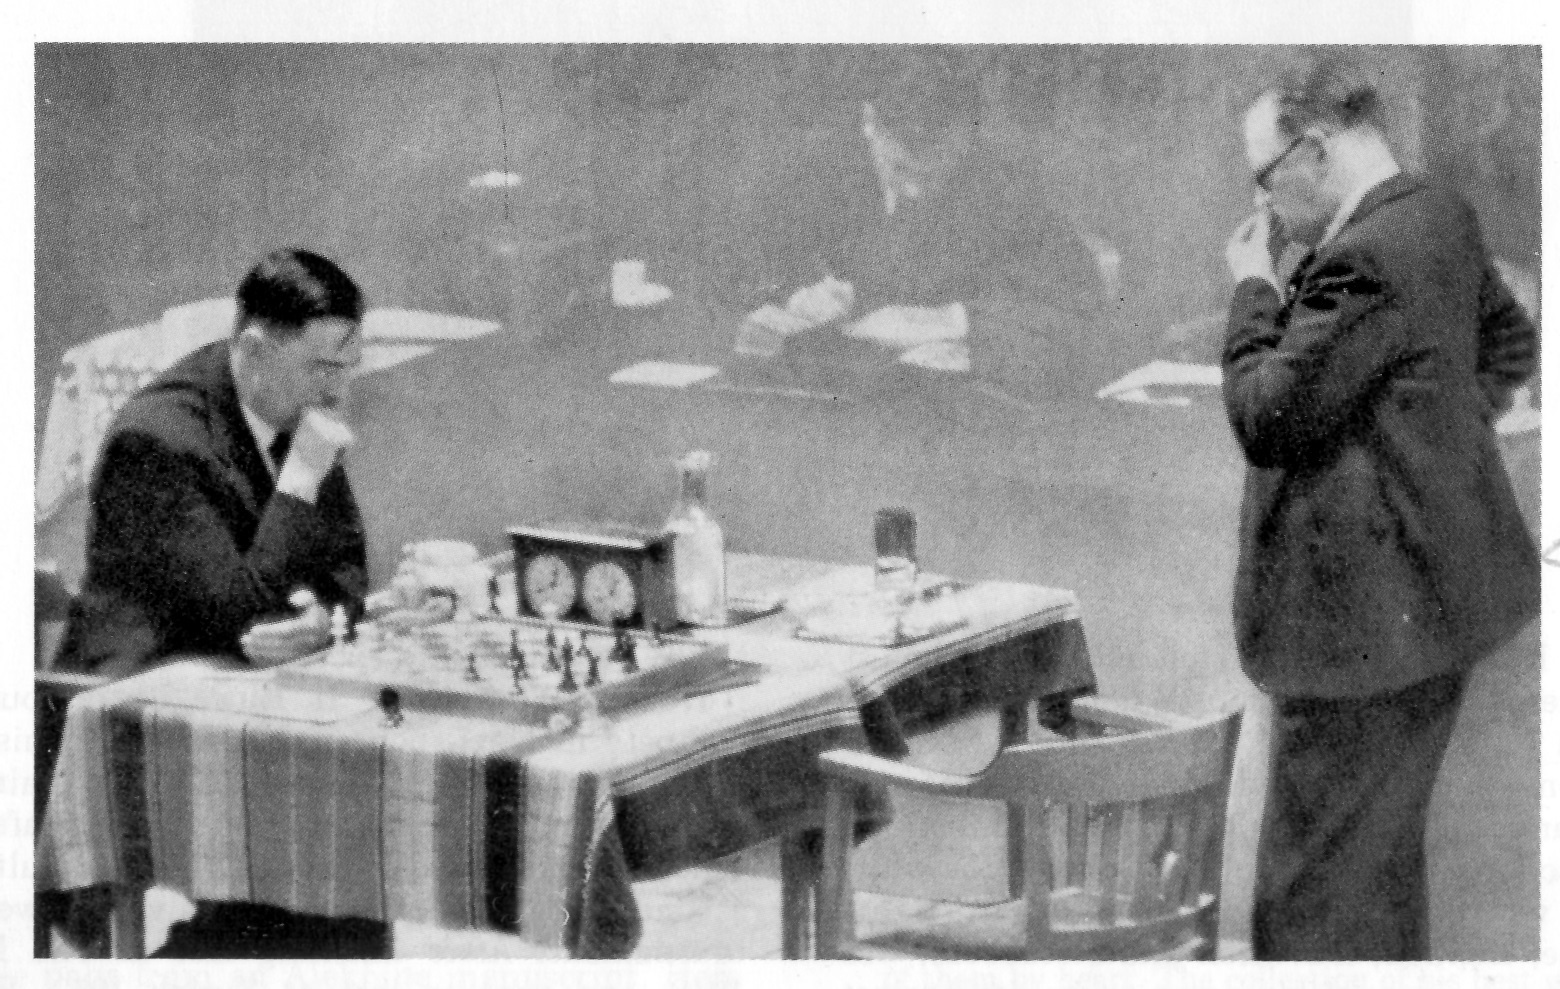 Bobby Fischer com 14 anos encara Max Euwe